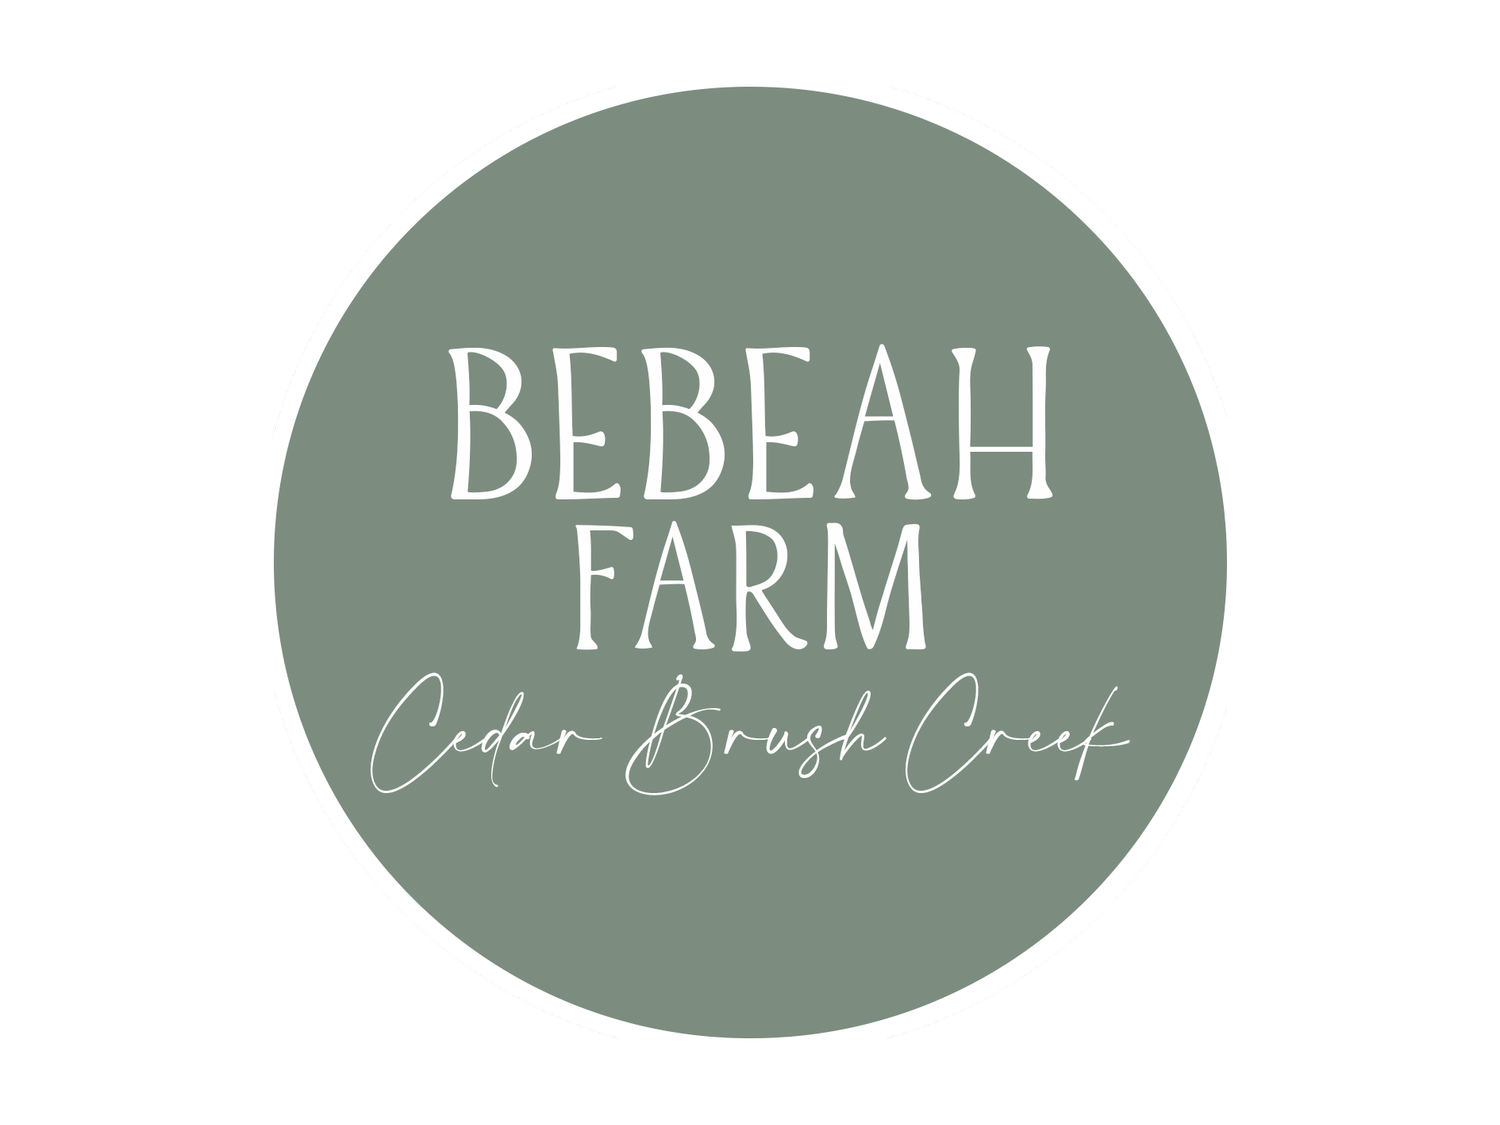 Bebeah Farm